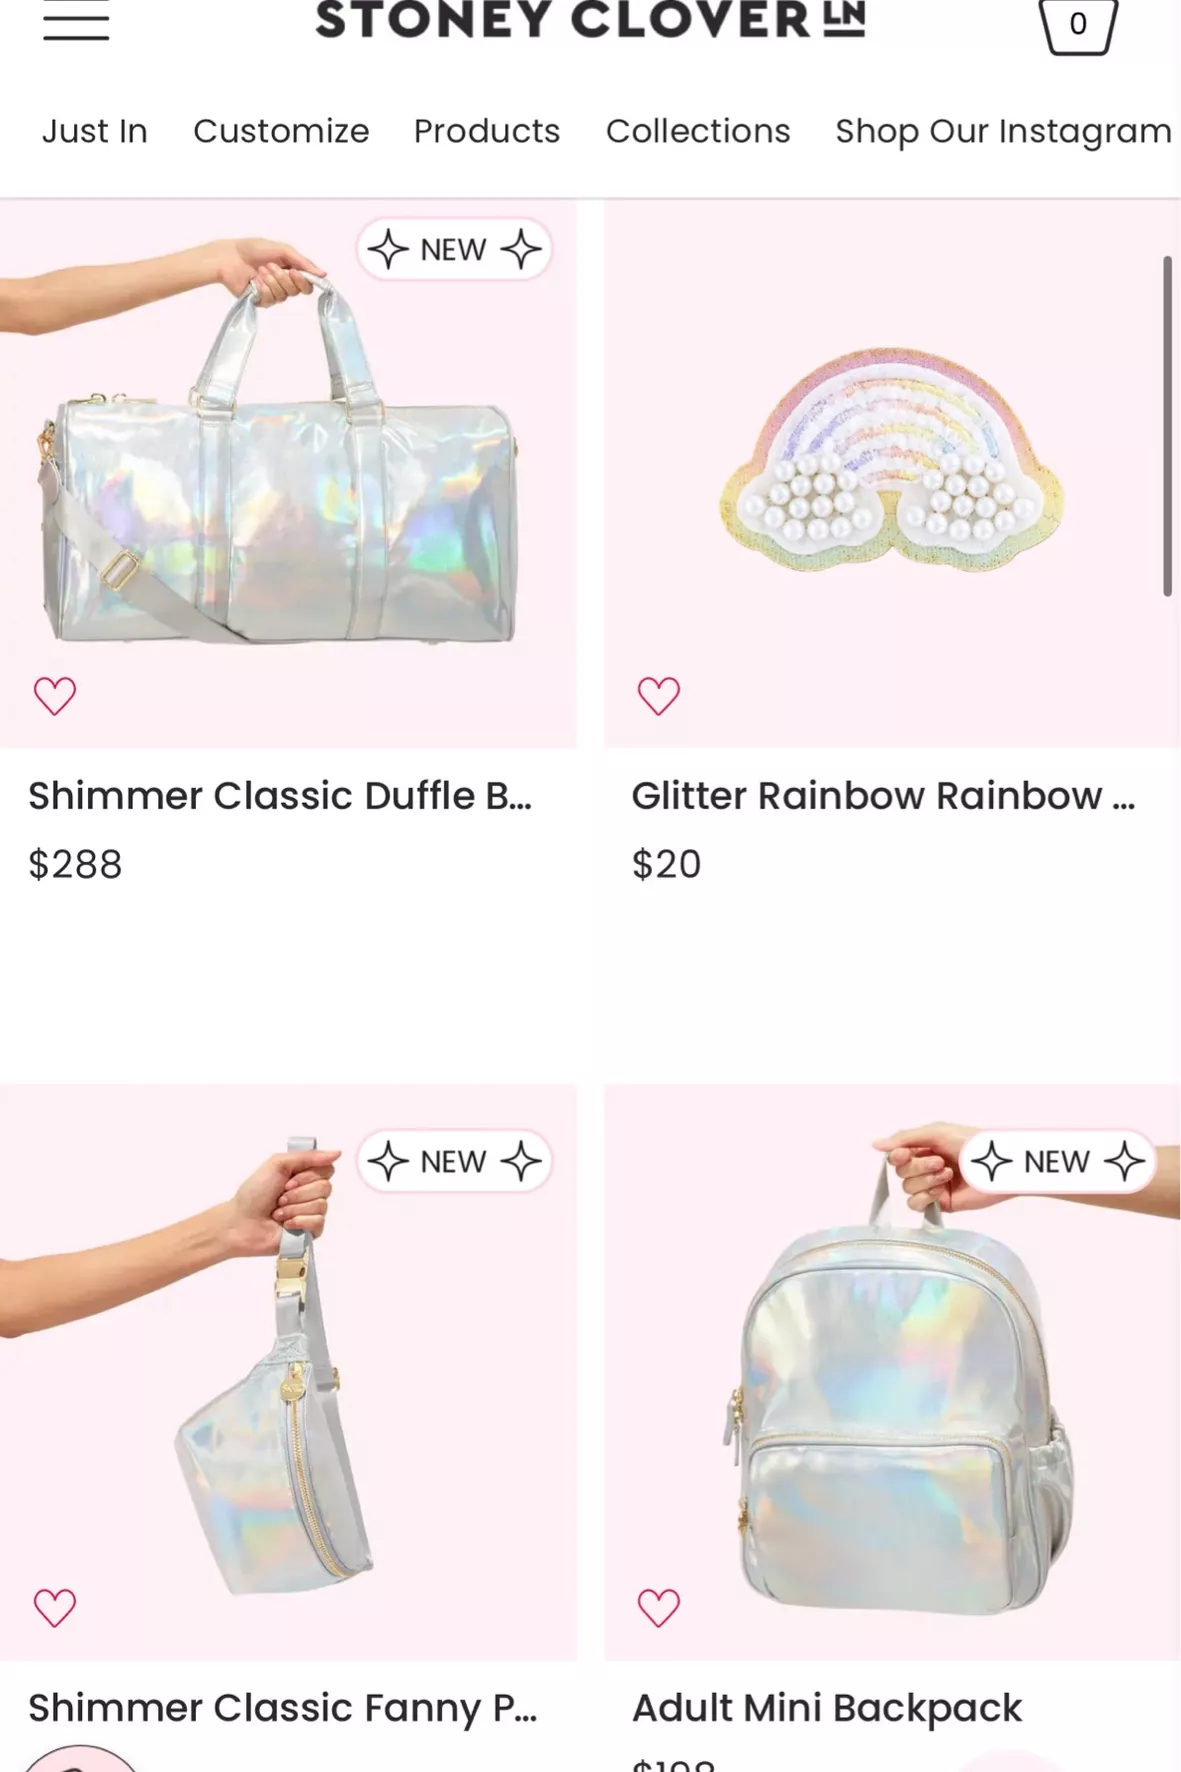 Over The Rainbow Glitter Satchel Bag